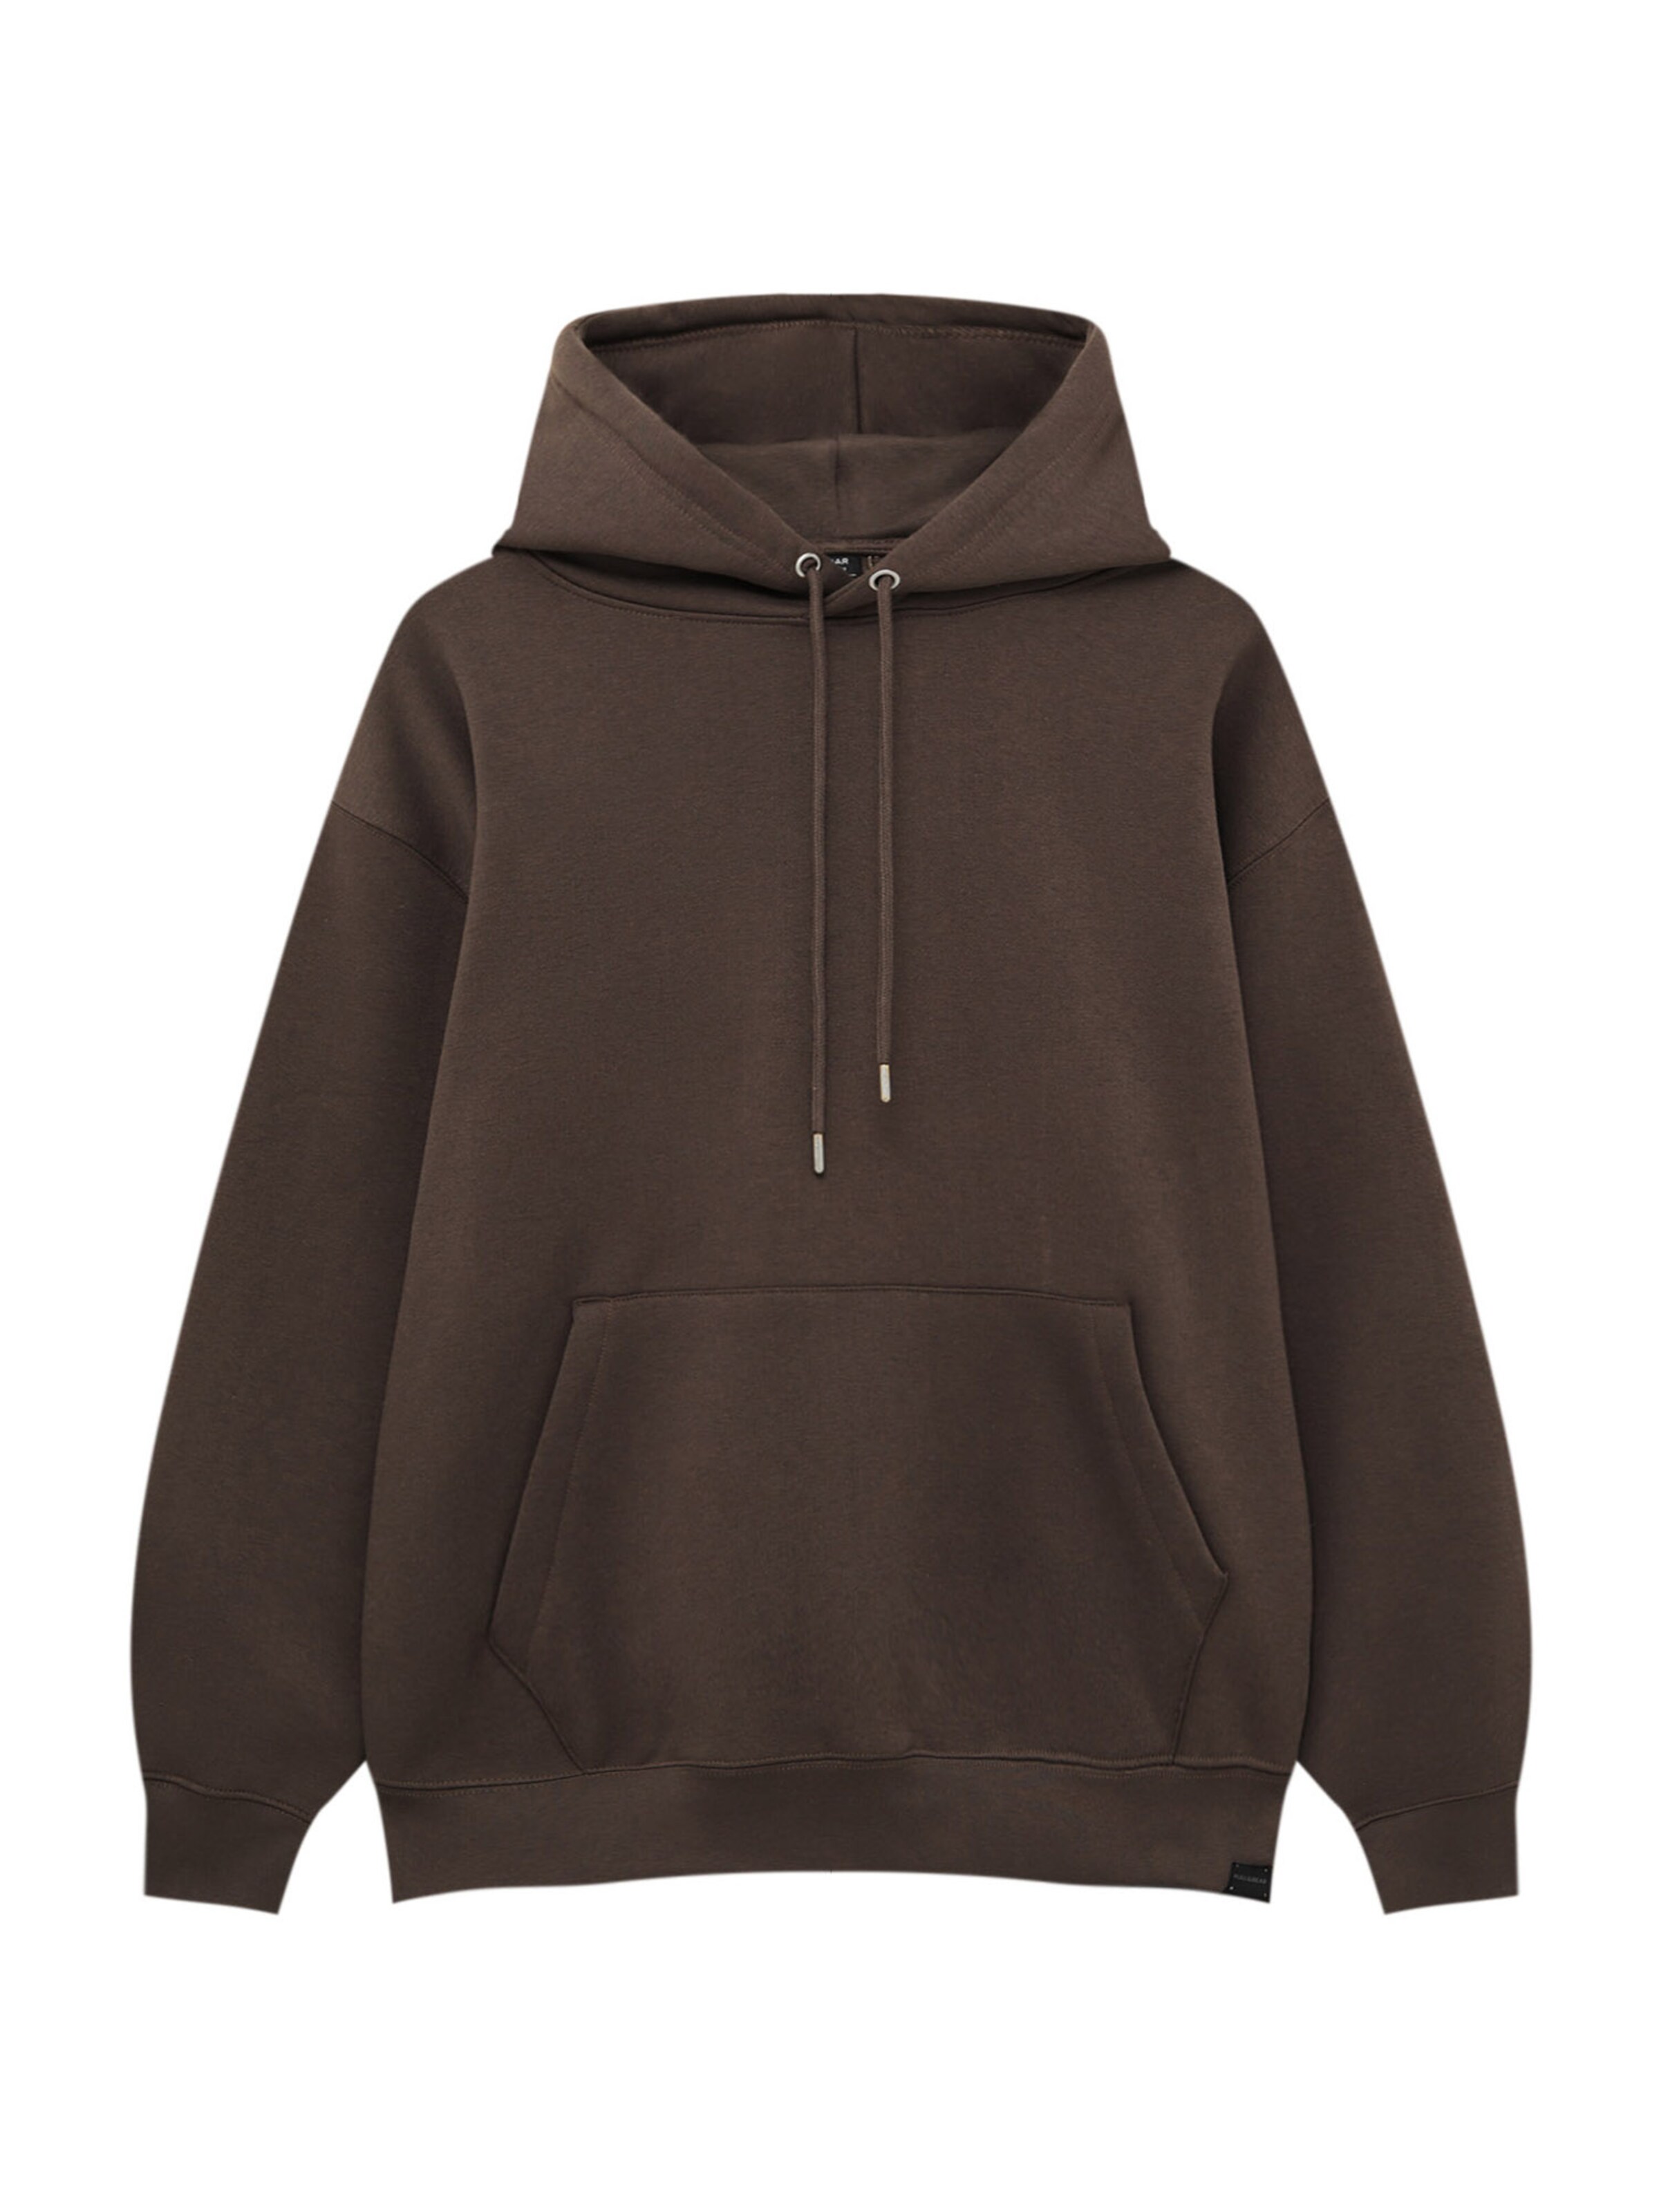 Braun XS HERREN Pullovers & Sweatshirts Hoodie Pull&Bear sweatshirt Rabatt 92 % 